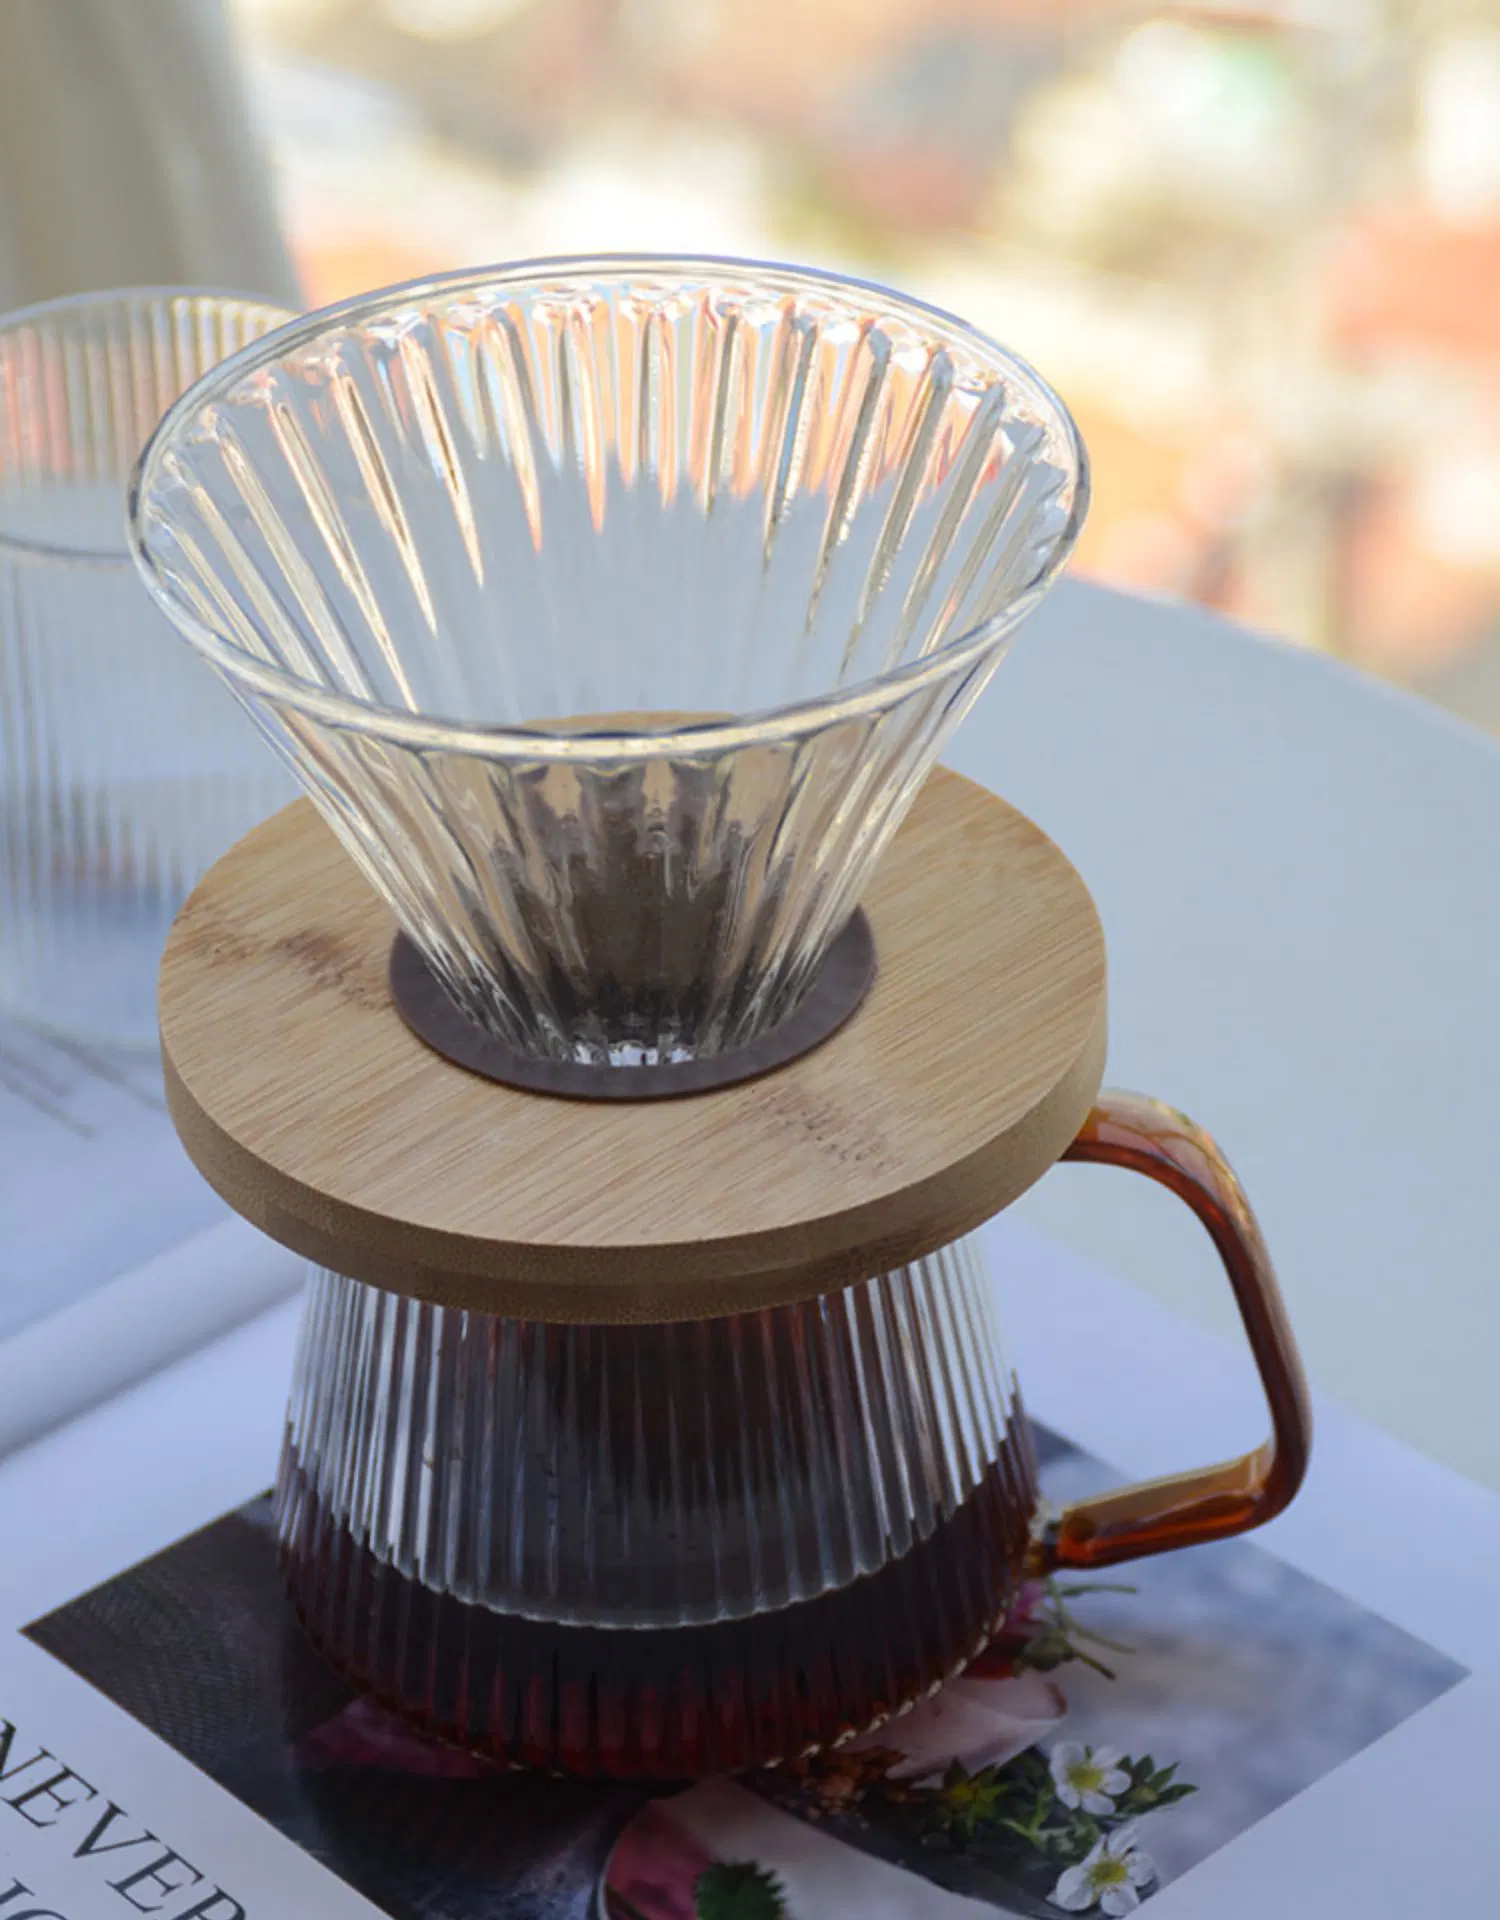 Комплекты средств разработки кофе горячим или холодным поддон Кофейник установить сервер кофе с цветным стеклом ручки